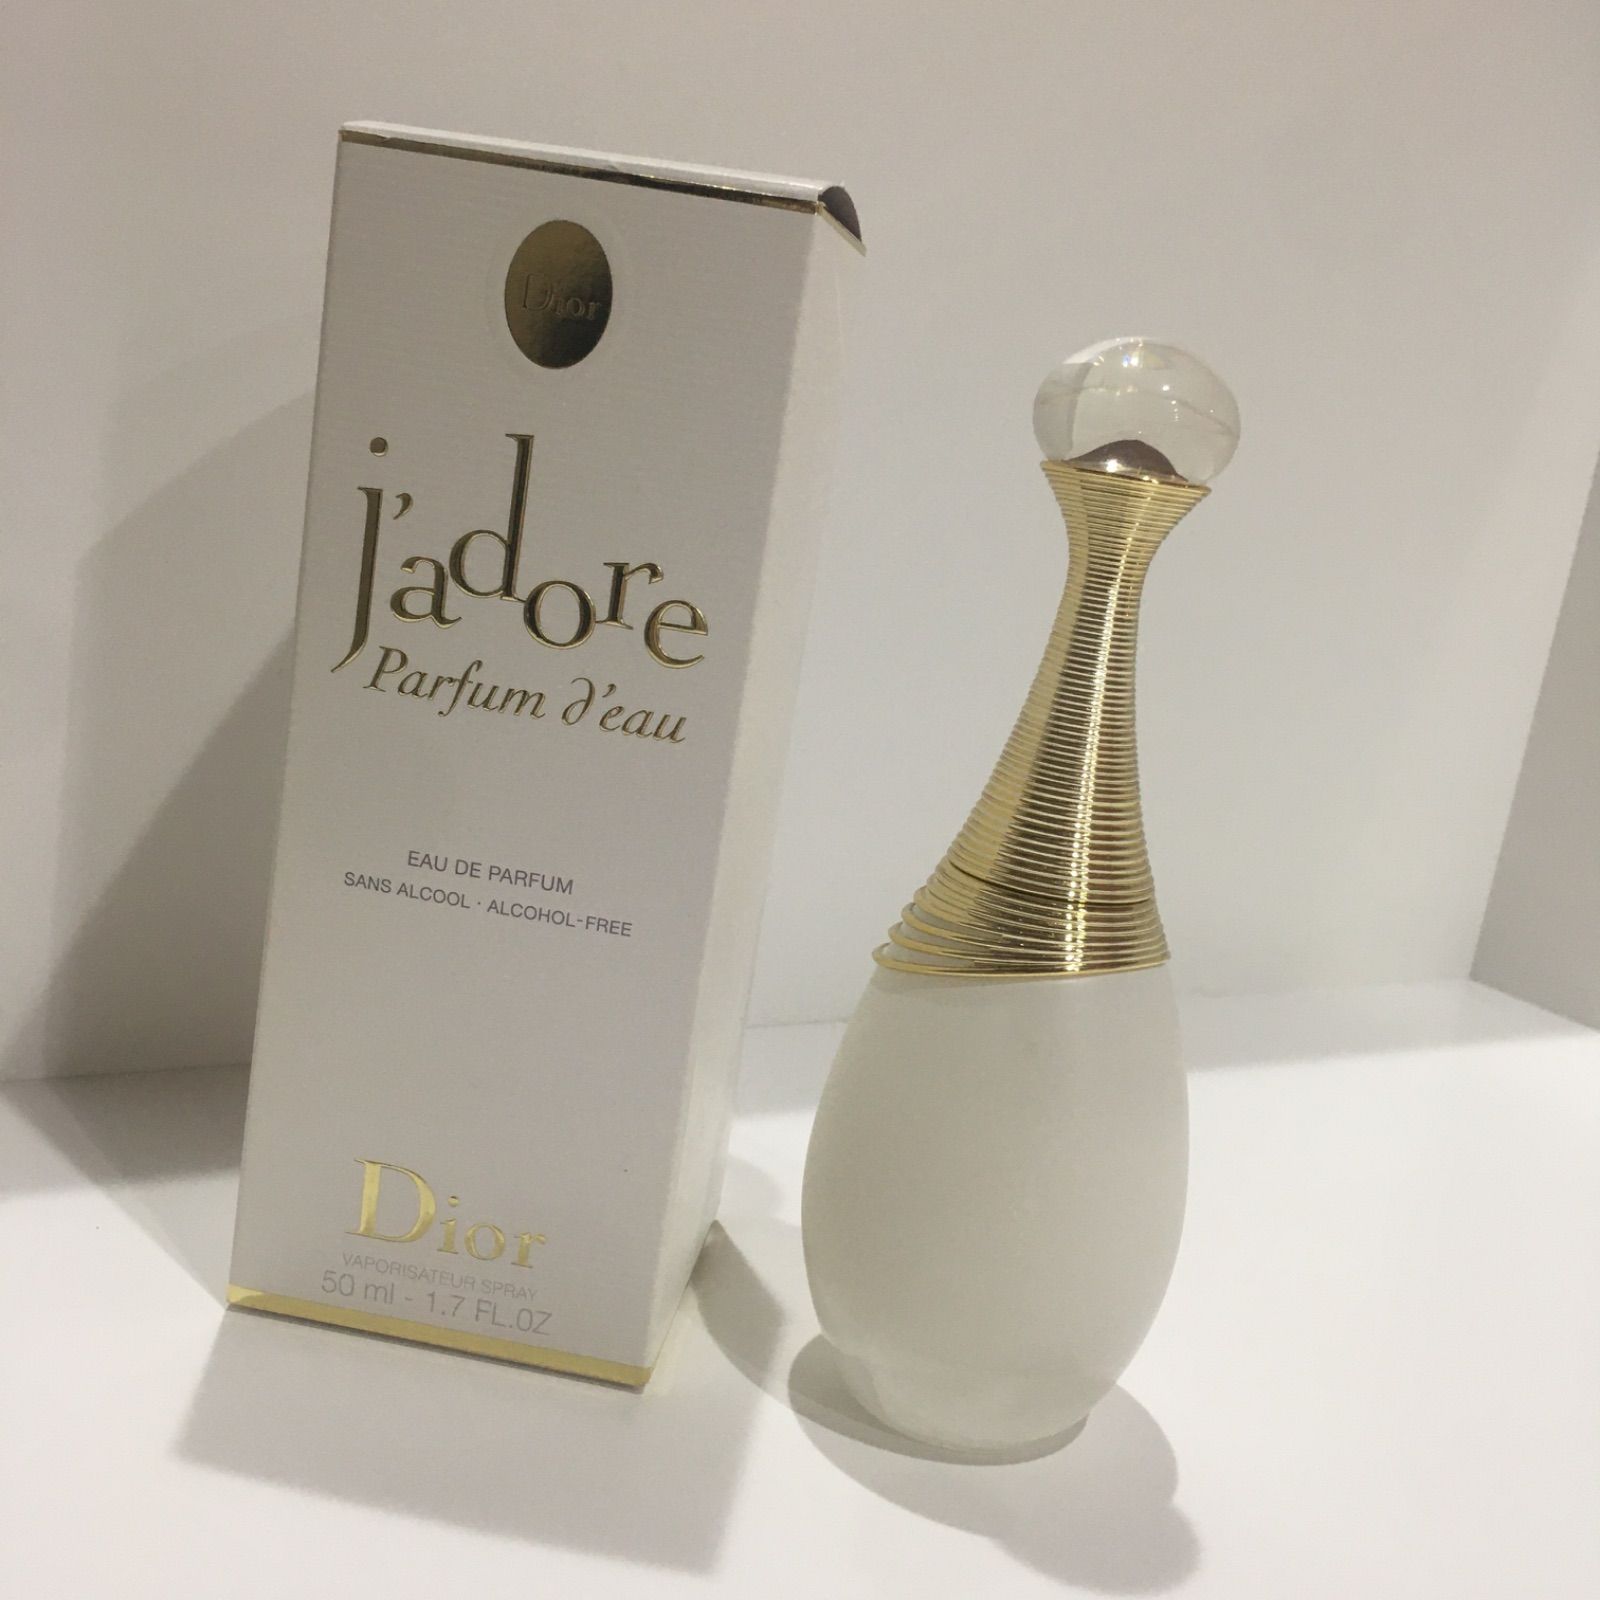 箱あり】Dior ジャドール パルファン ドー 香水 50ml - かんてい局